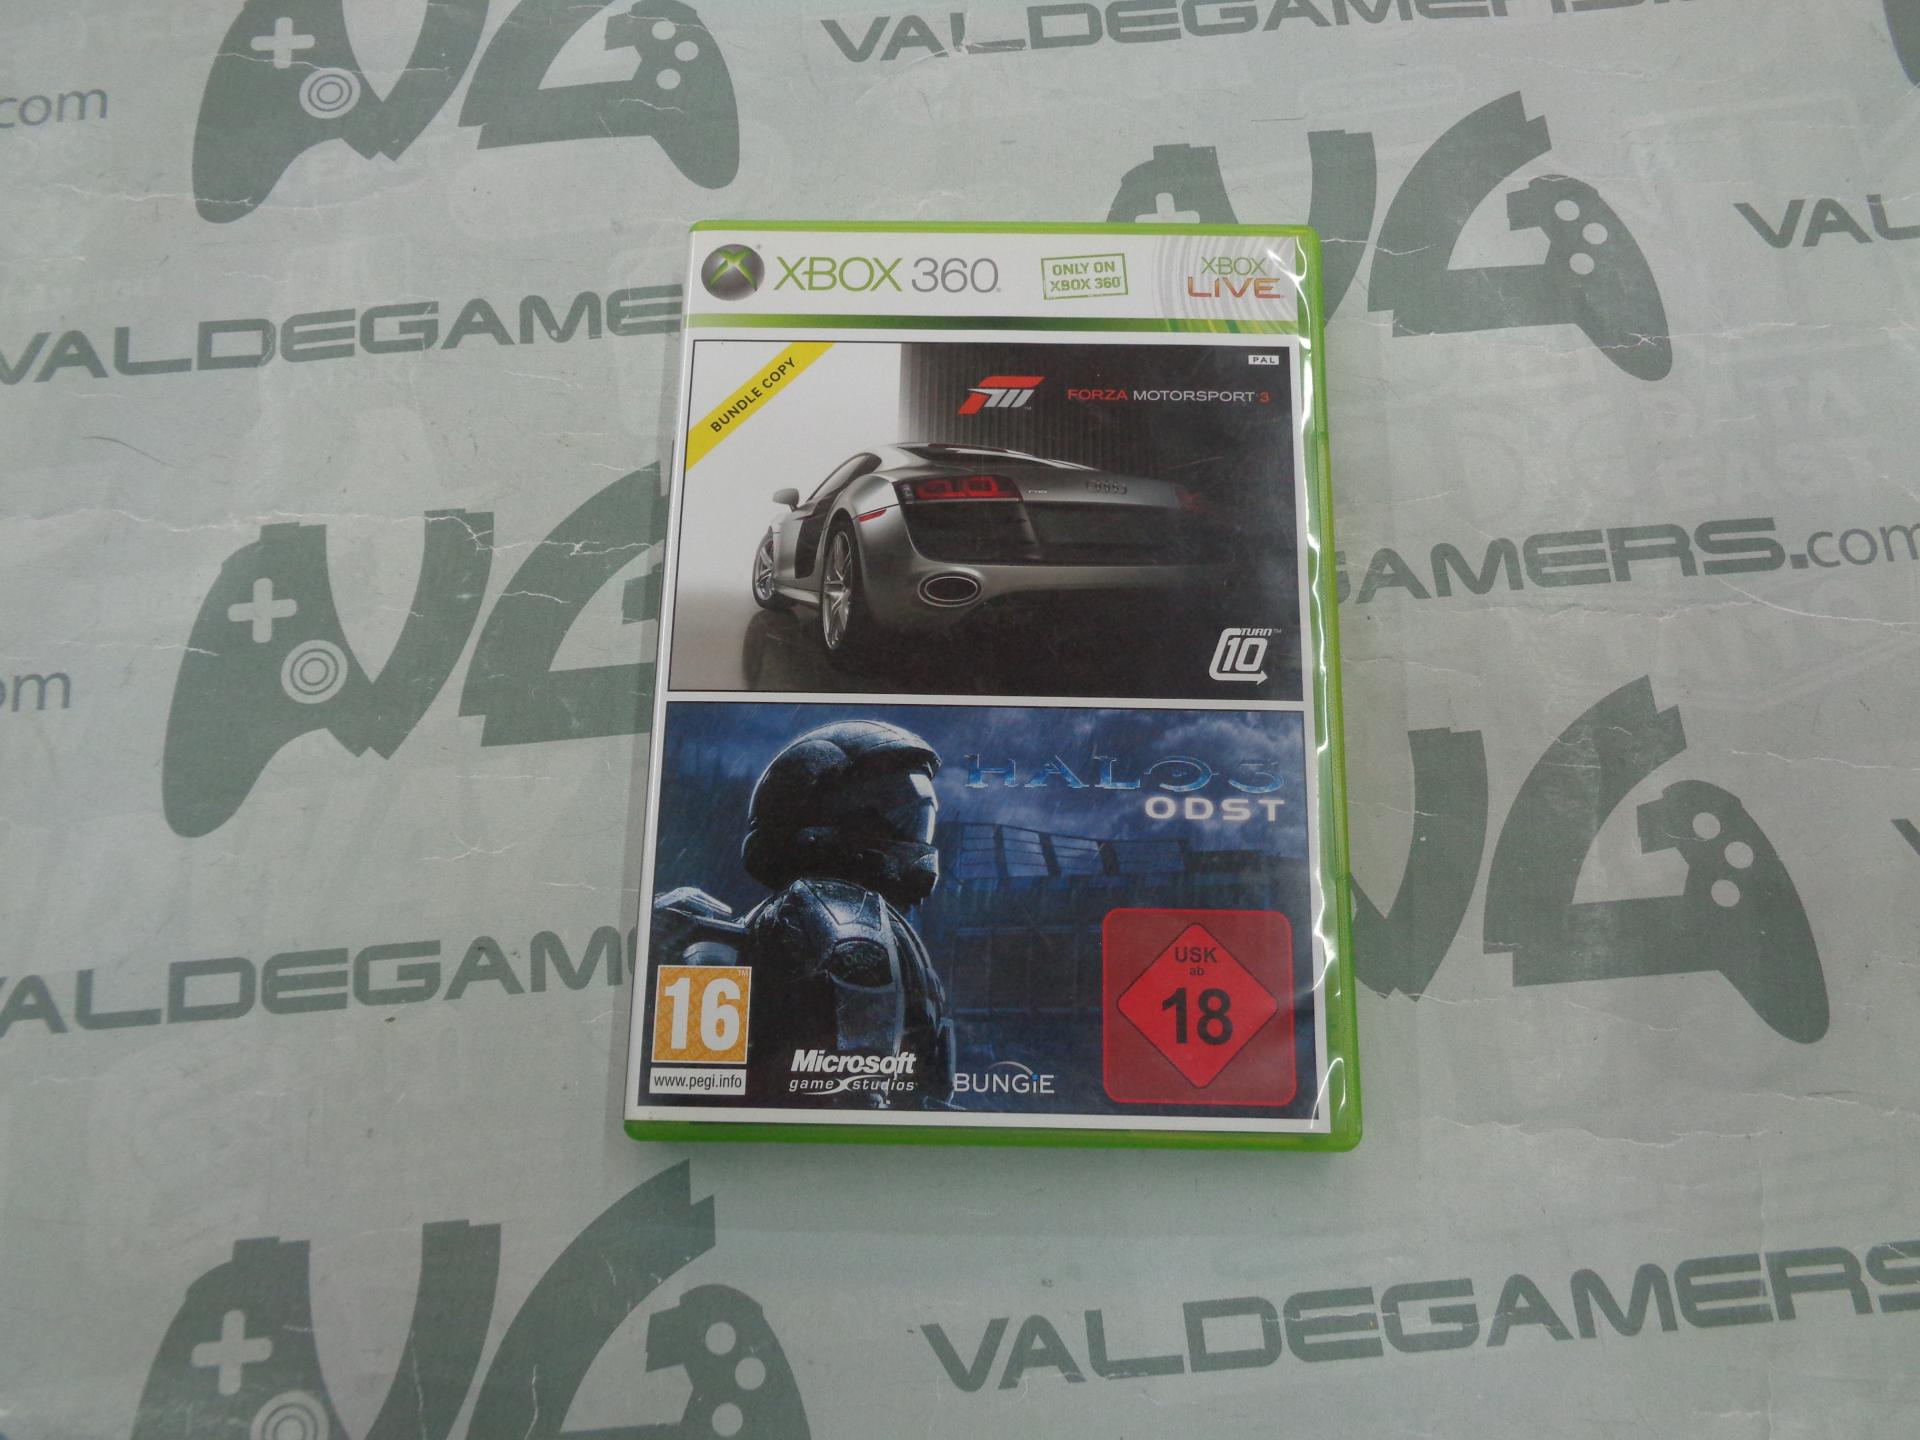 Forza 3 + Halo 3 ODTS